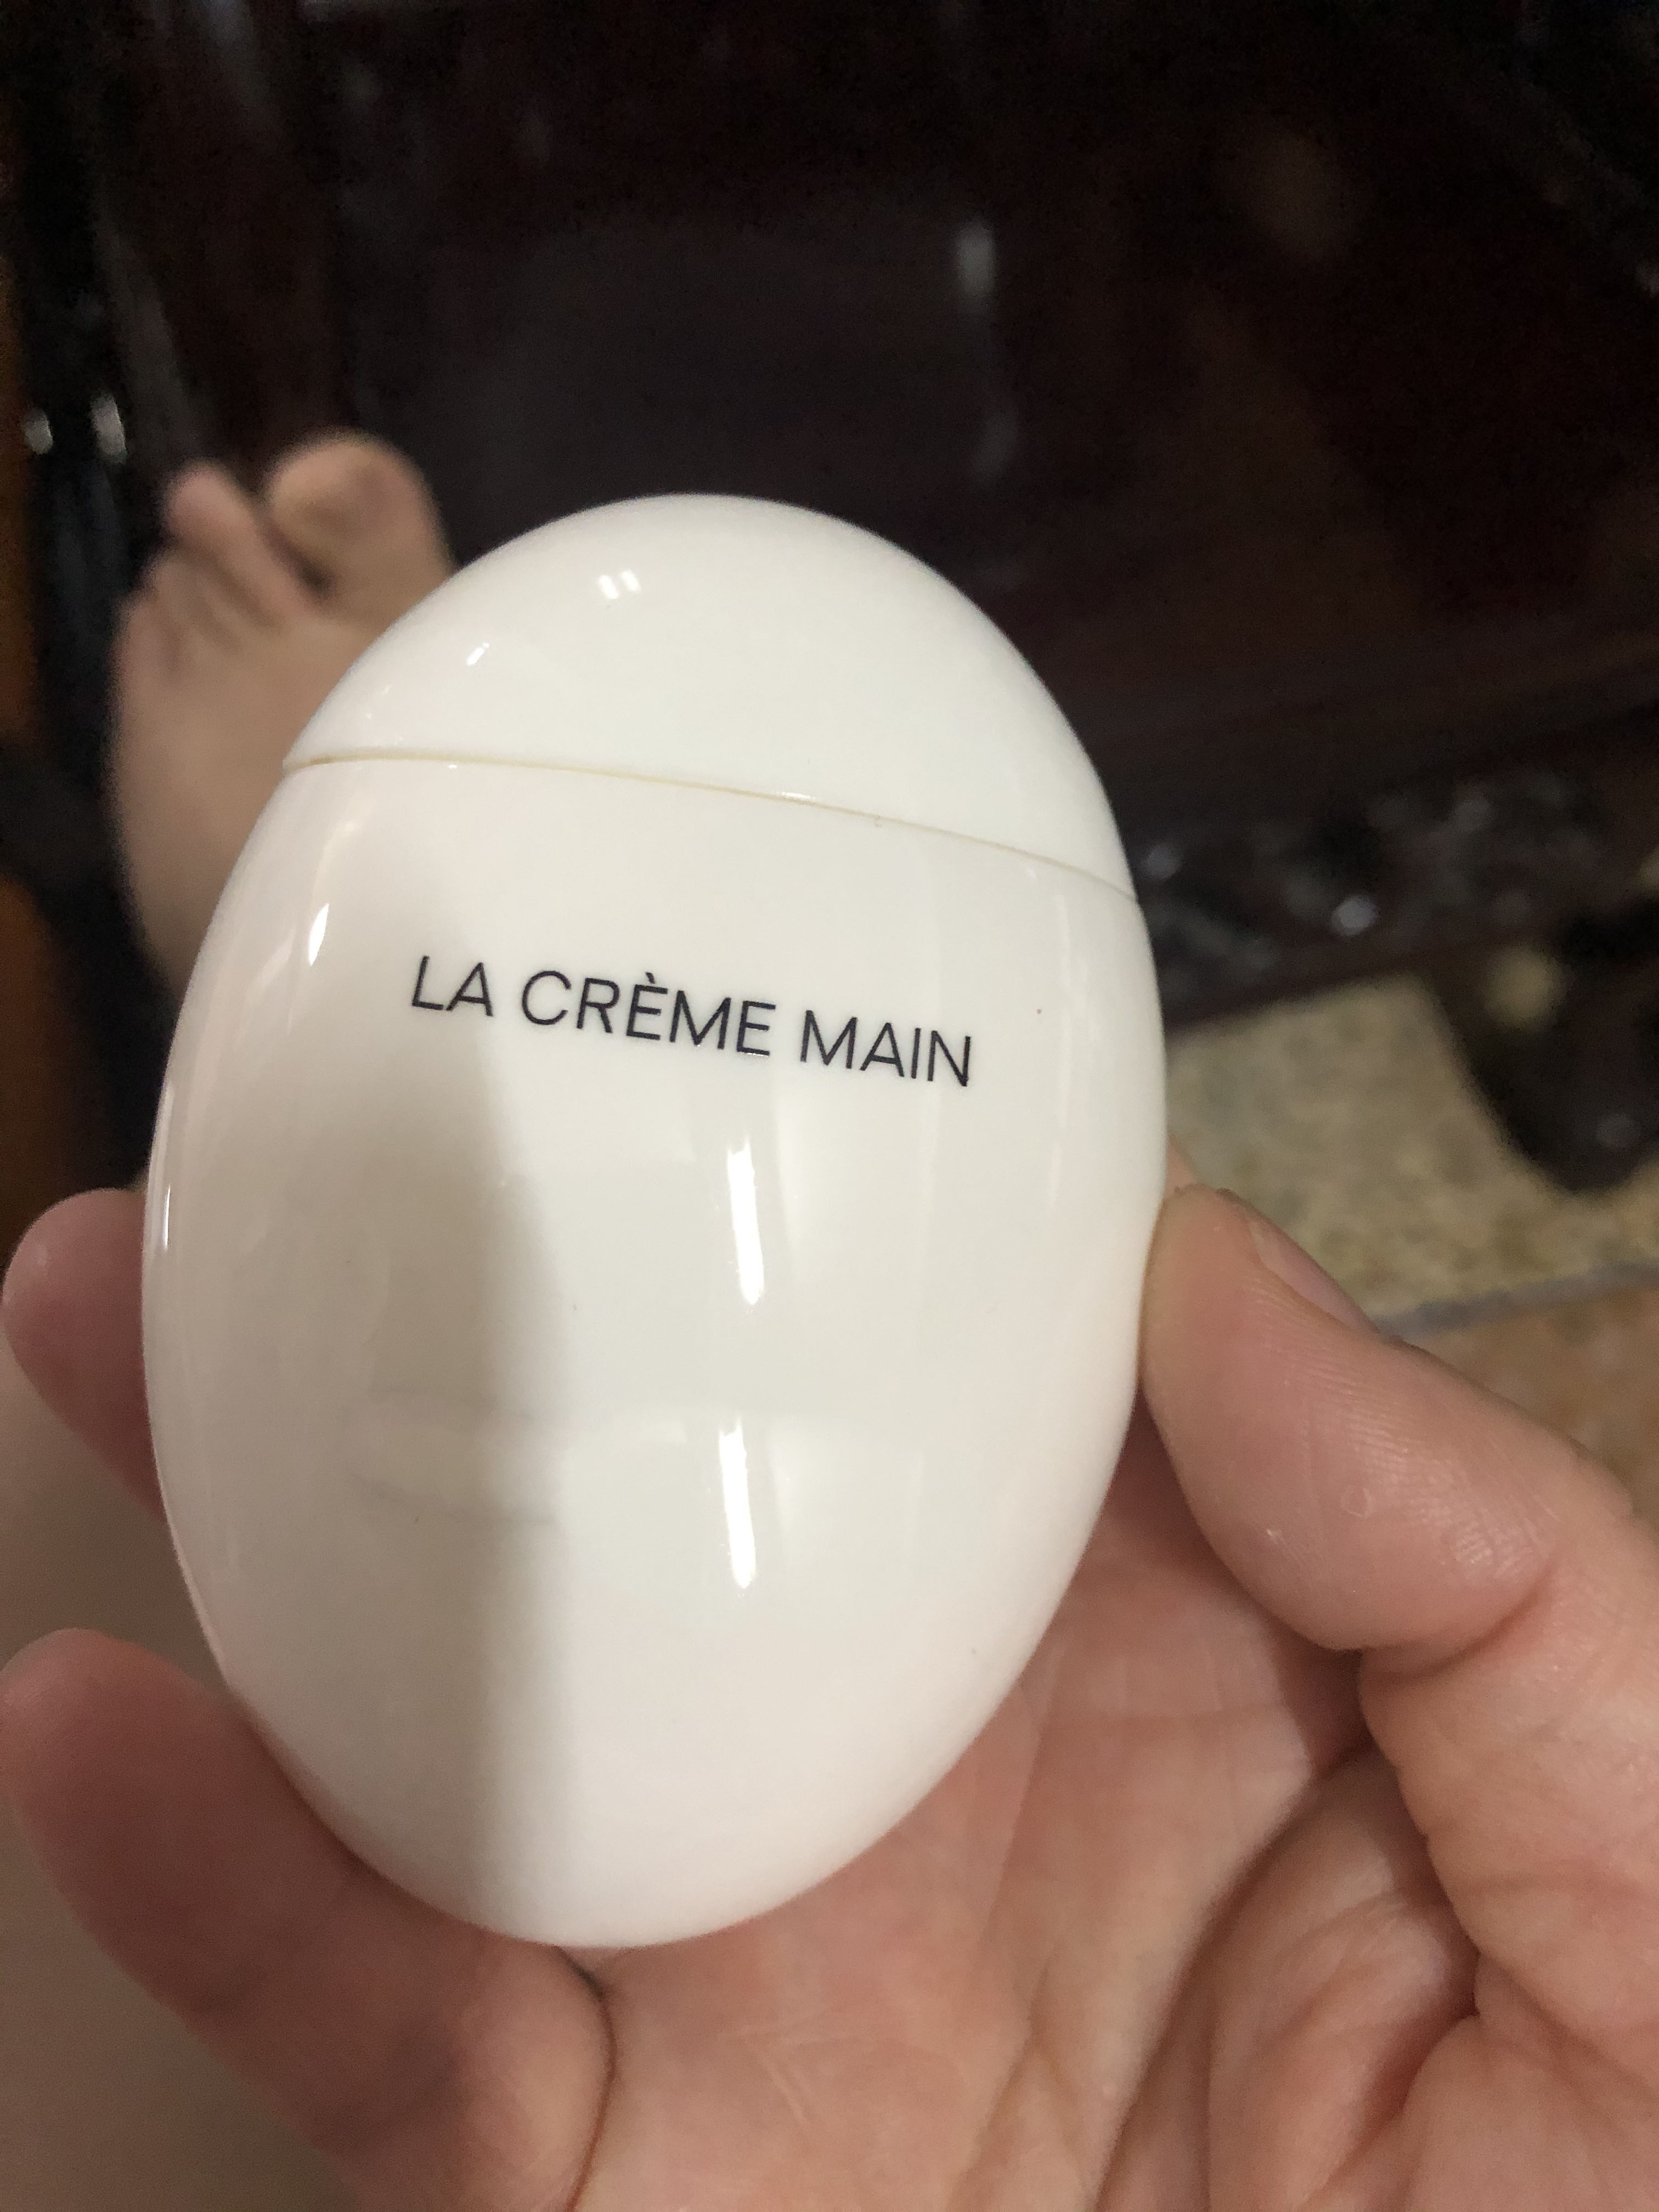 العلامة التجارية الشهيرة LE LIFT كريم اليد LA CREME MAIN بيض أسود بيض أبيض كريم اليدين للعناية بالبشرة بريميرلاش أعلى جودة